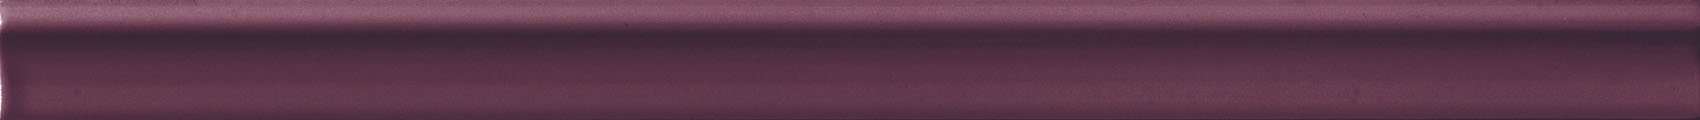 Бордюры Epoca Le Vernis London Vamp, цвет фиолетовый, поверхность глянцевая, прямоугольник, 35x502